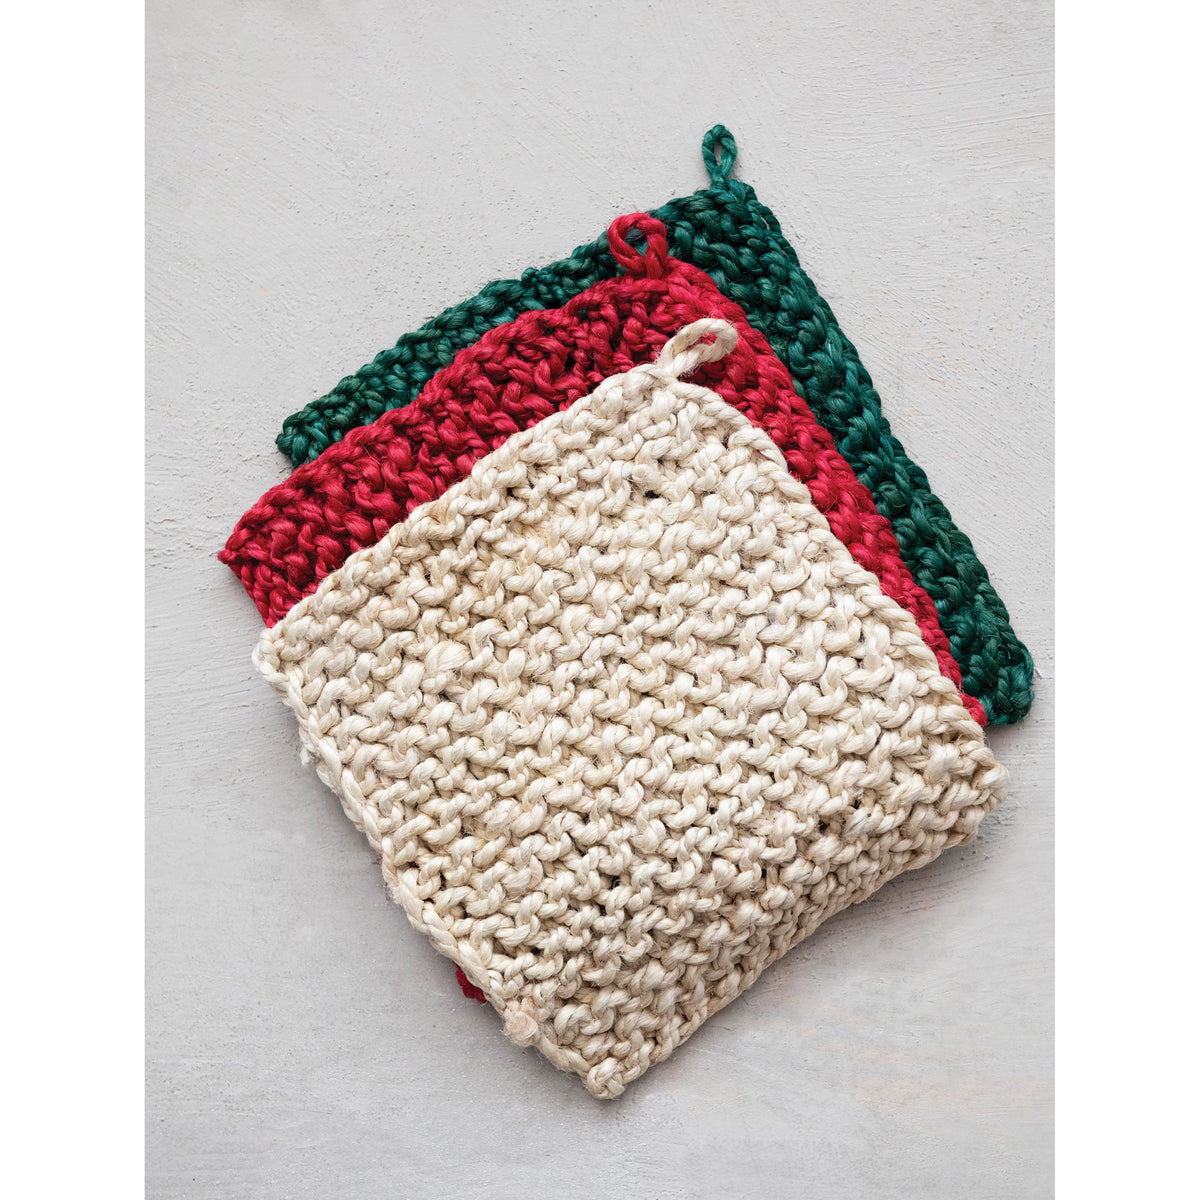 Jute Square Crocheted Potholder